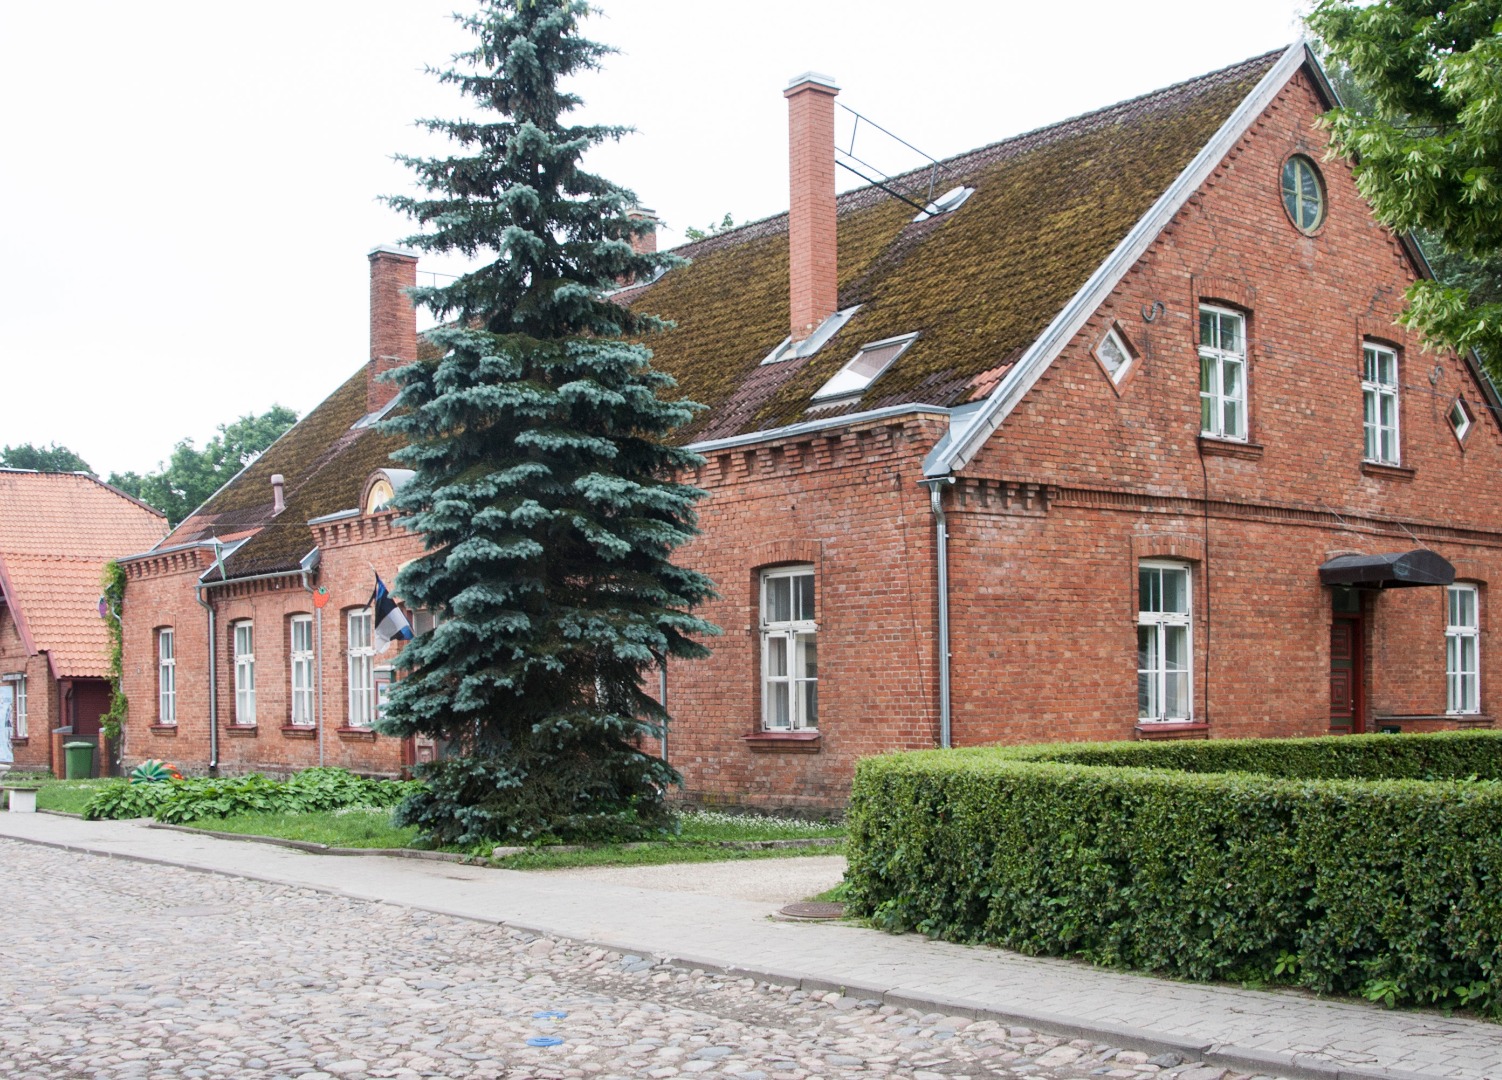 Kaunistustega aluspapiga fotol maja puiestee ääres, Viljandis. rephoto